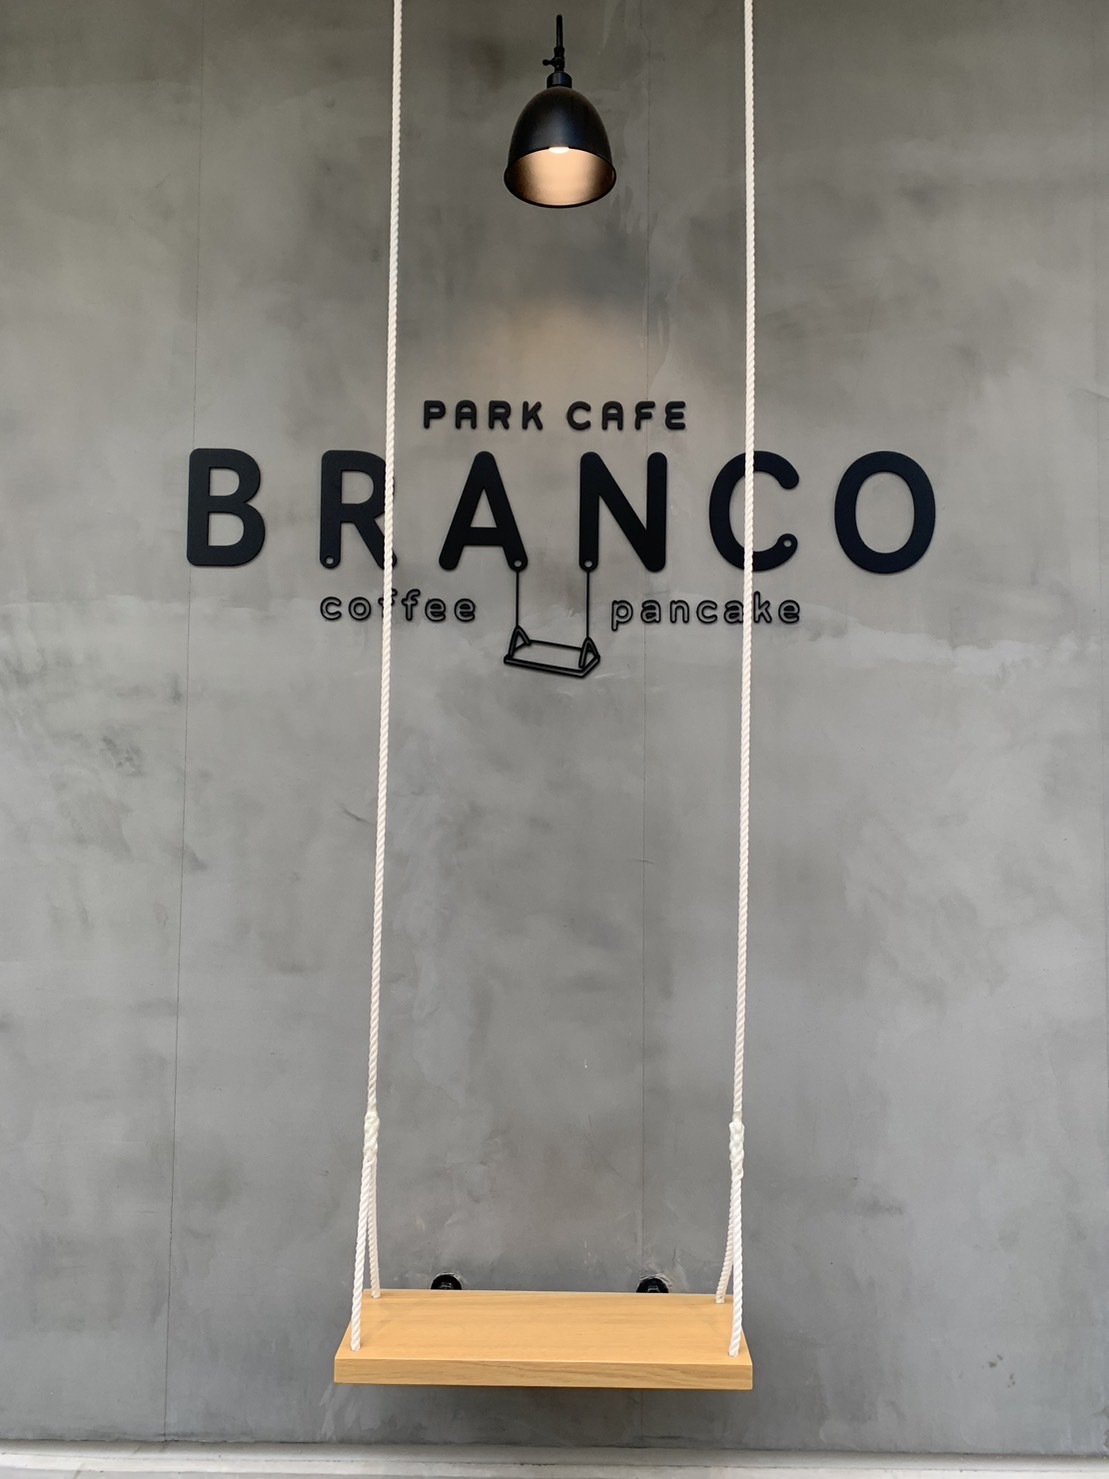 Images PARK CAFE BRANCO